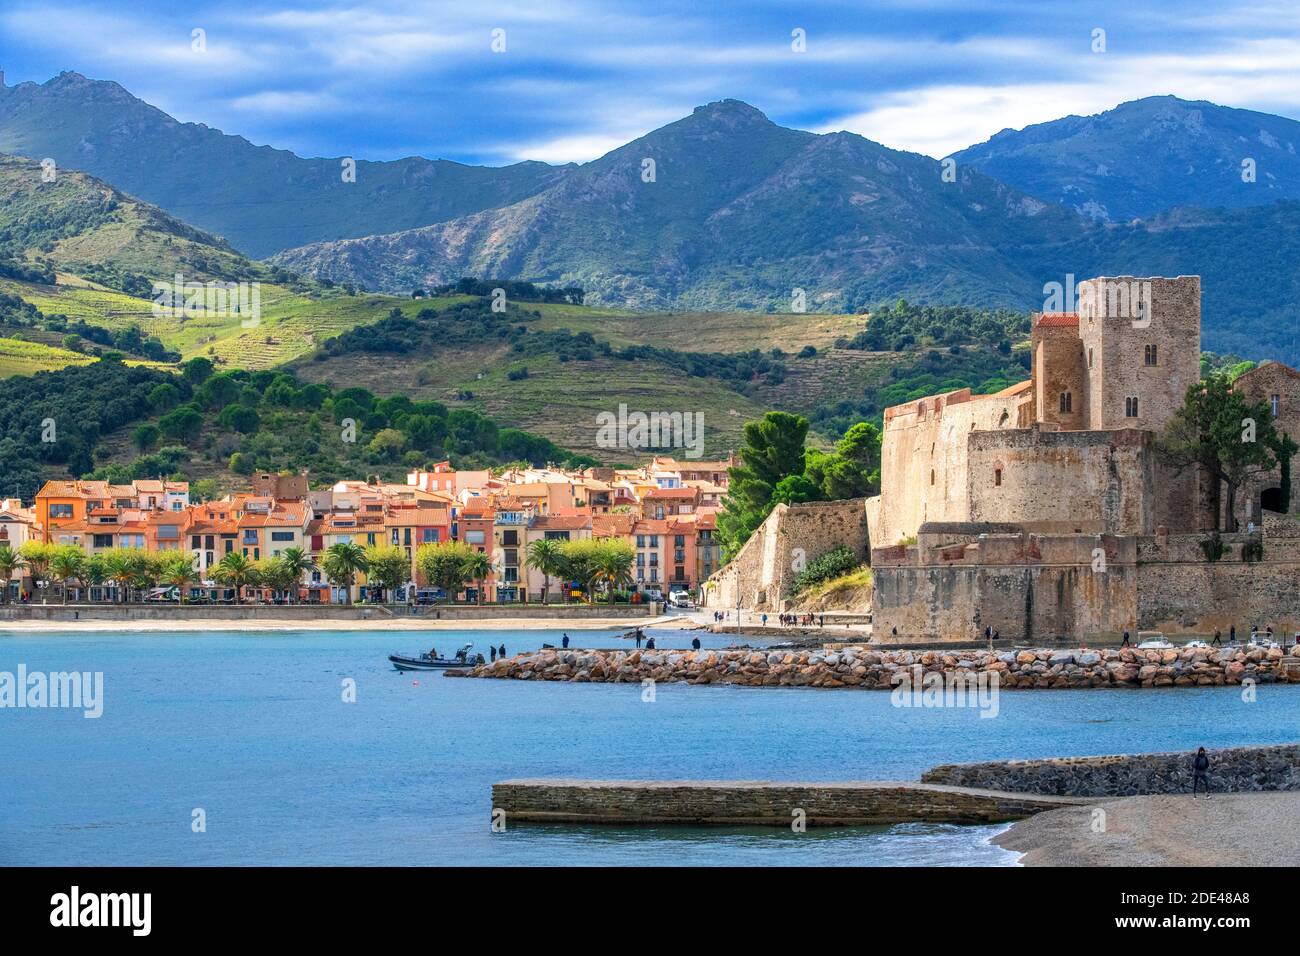 Königliche Burg von Collioure und Landschaft Strand am Meer des malerischen Dorfes Colliure, in der Nähe von Perpignan im Süden von Frankreich Languedoc-Roussillon C Stockfoto